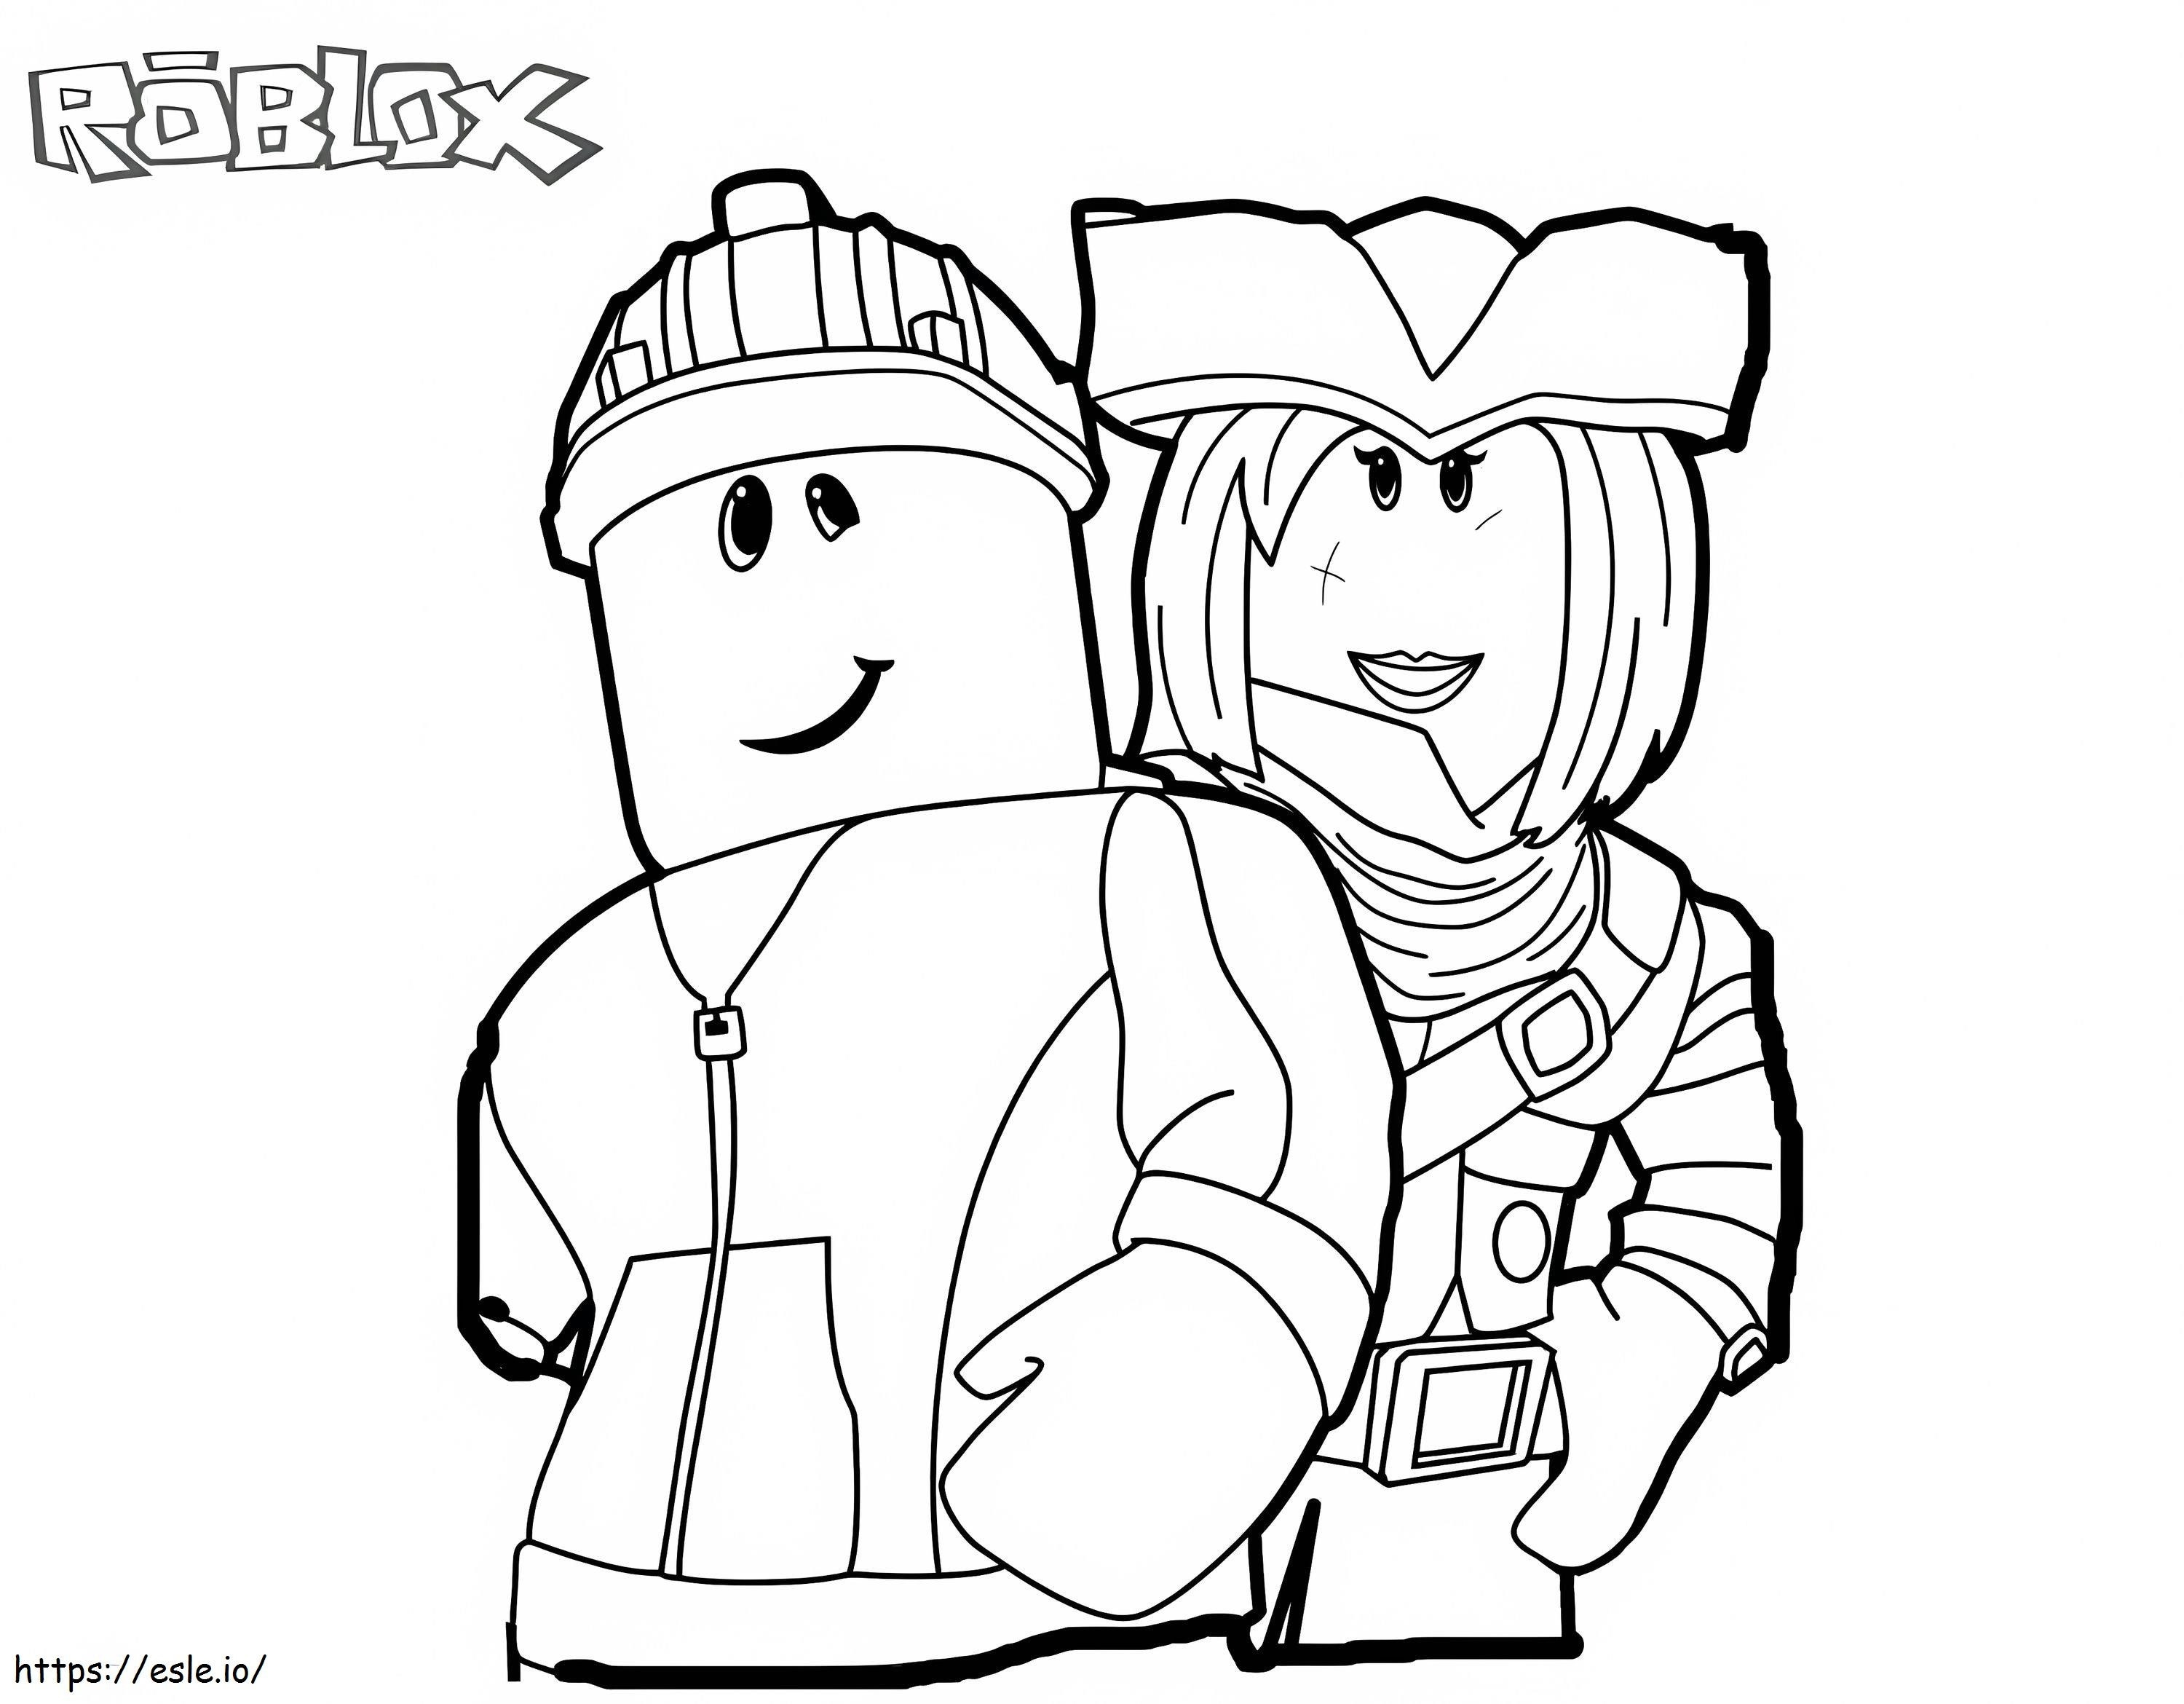 Roblox con due personaggi da colorare